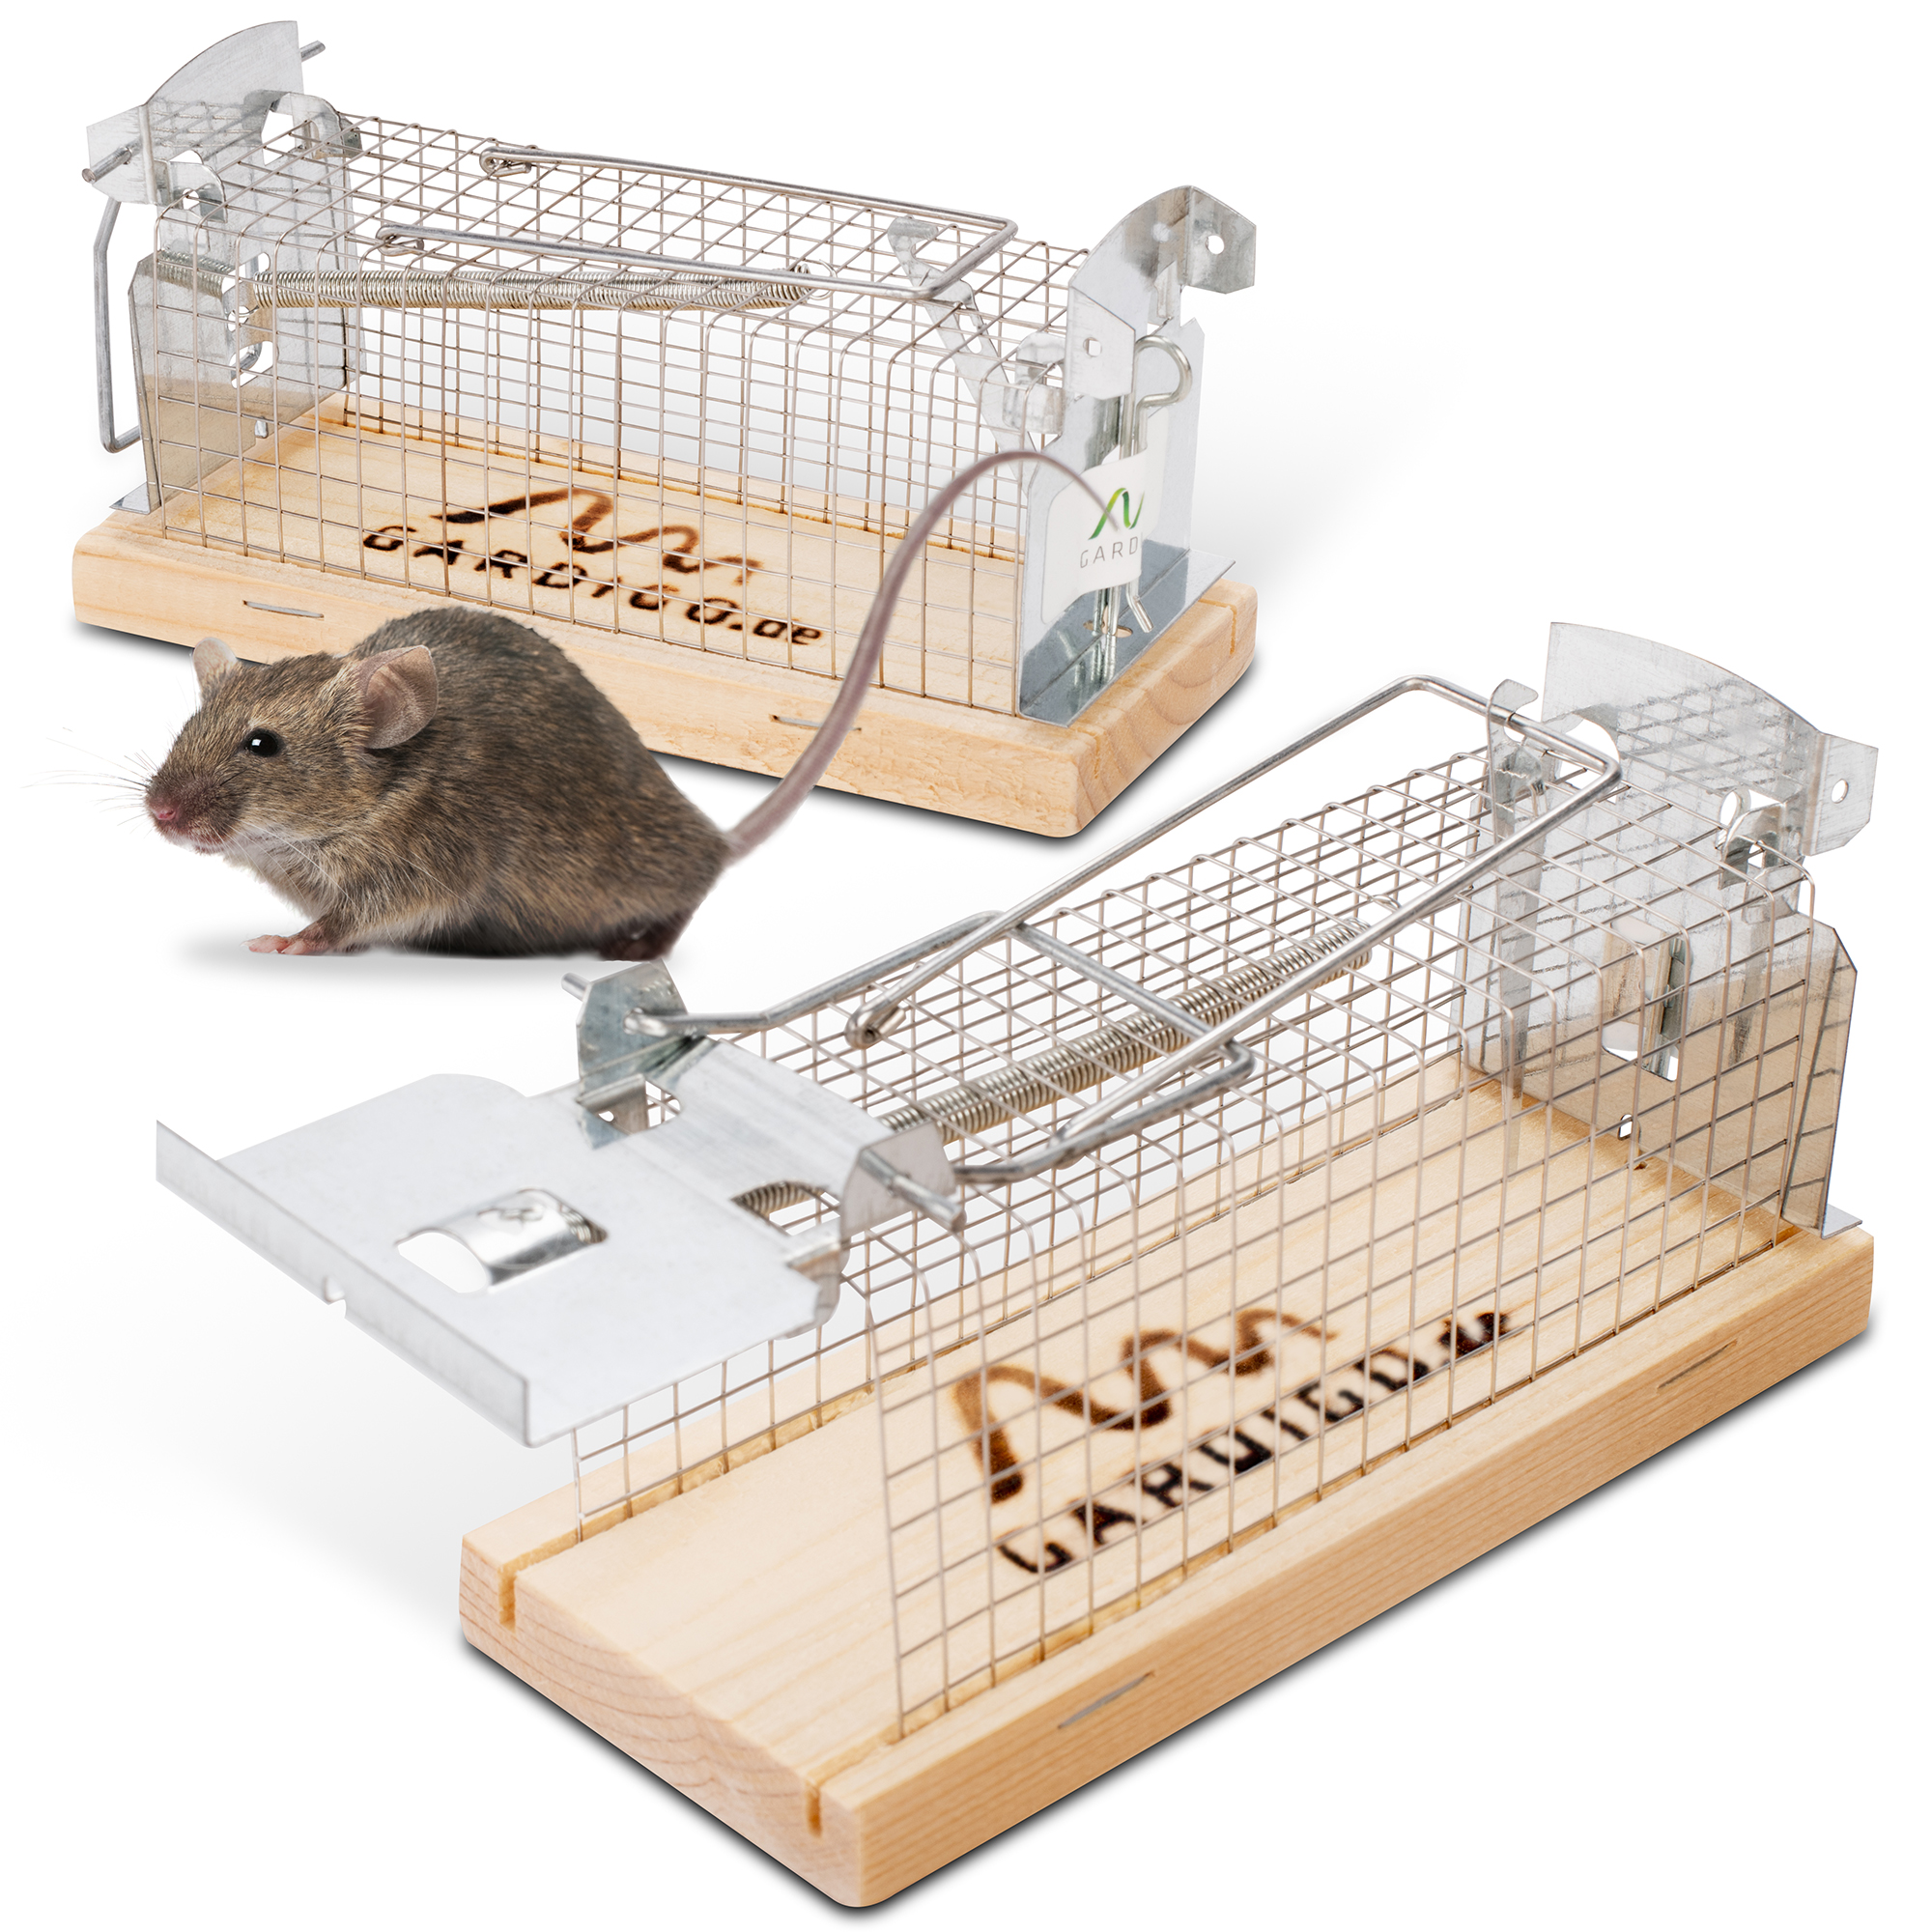 Lebendfalle für Mäuse aus Metall